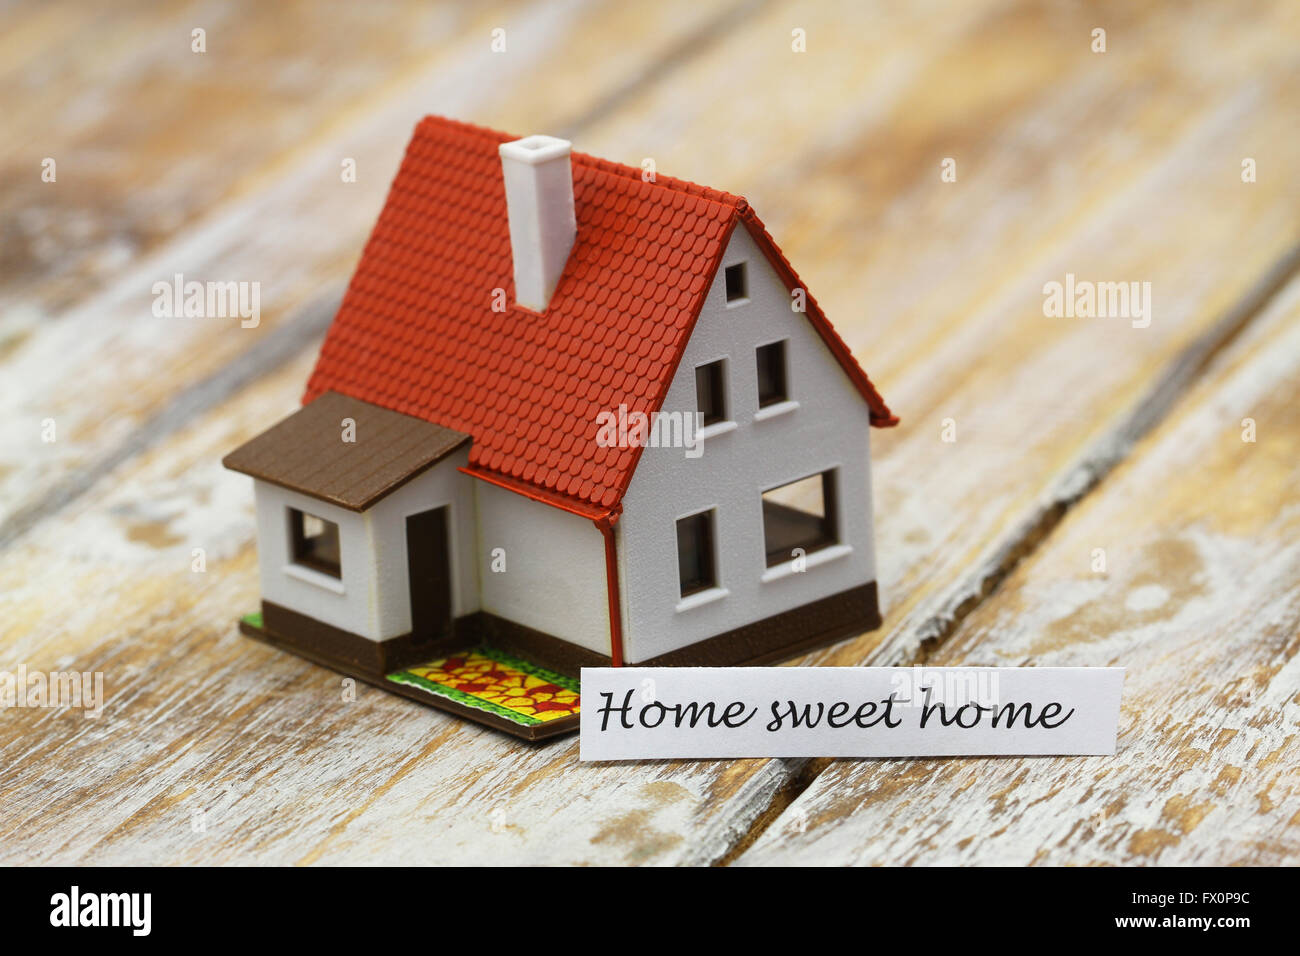 Home sweet home card con il modello in miniatura di una casa Foto Stock